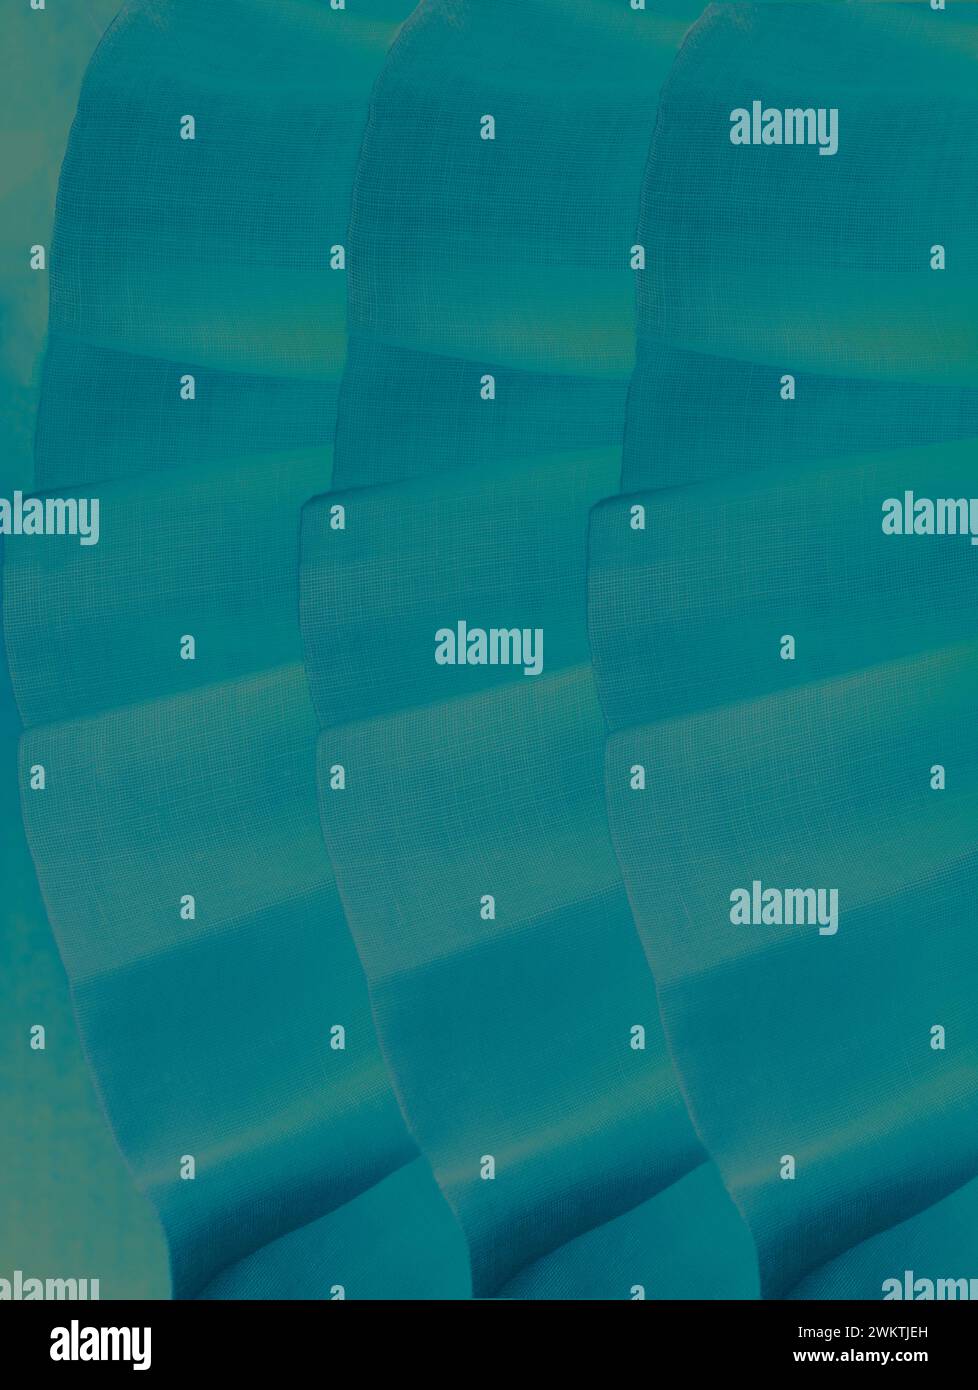 Volant, increspature nel mare, in tre file, mostrano una texture in tessuto organza nelle tonalità blu e verde. Viste verticali o orizzontali di contrasti a colori. Foto Stock